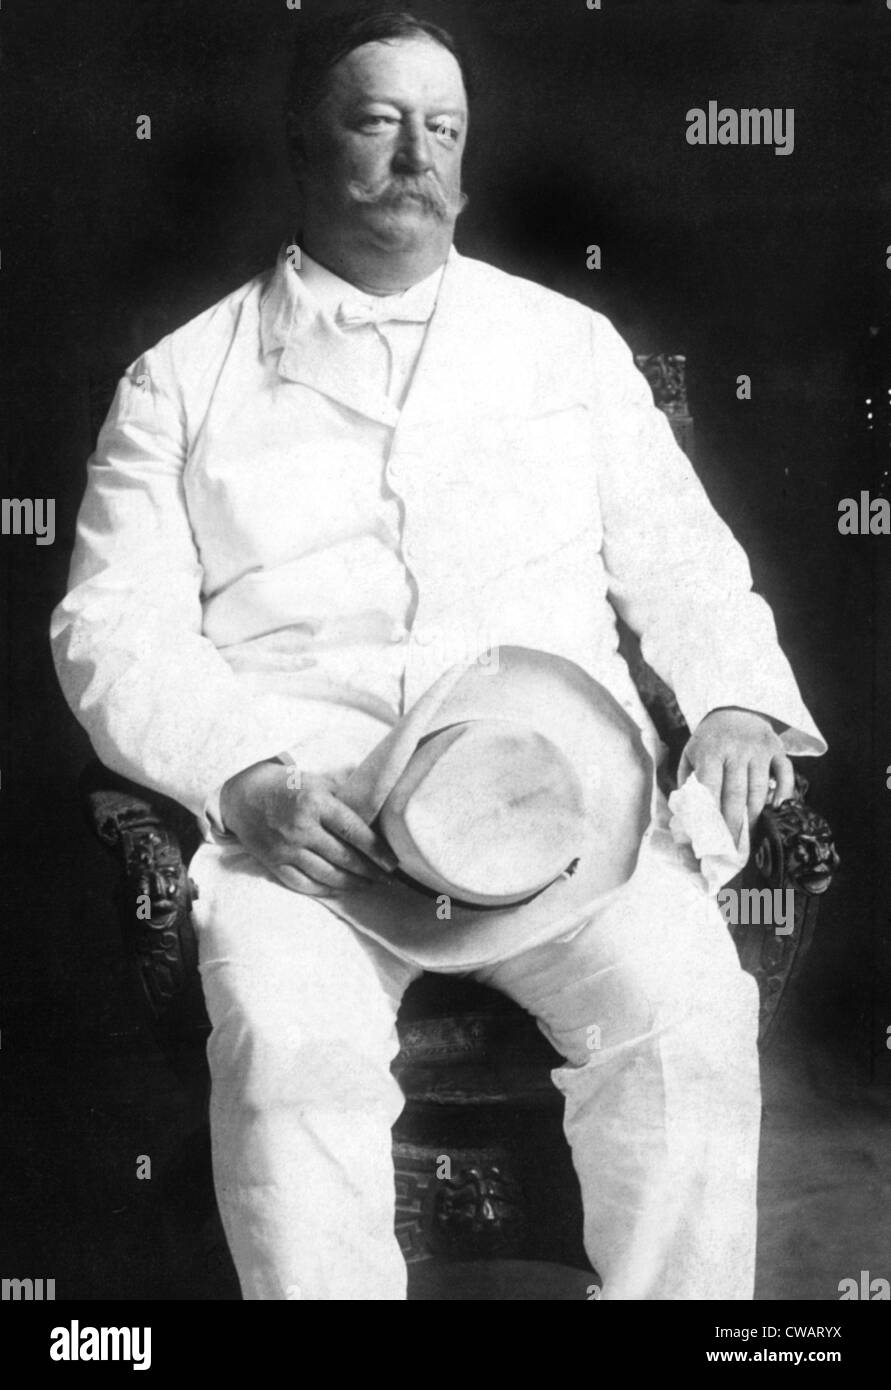 El Presidente William Howard Taft, 1/30/08. Cortesía: CSU Archives / Everett Collection Foto de stock